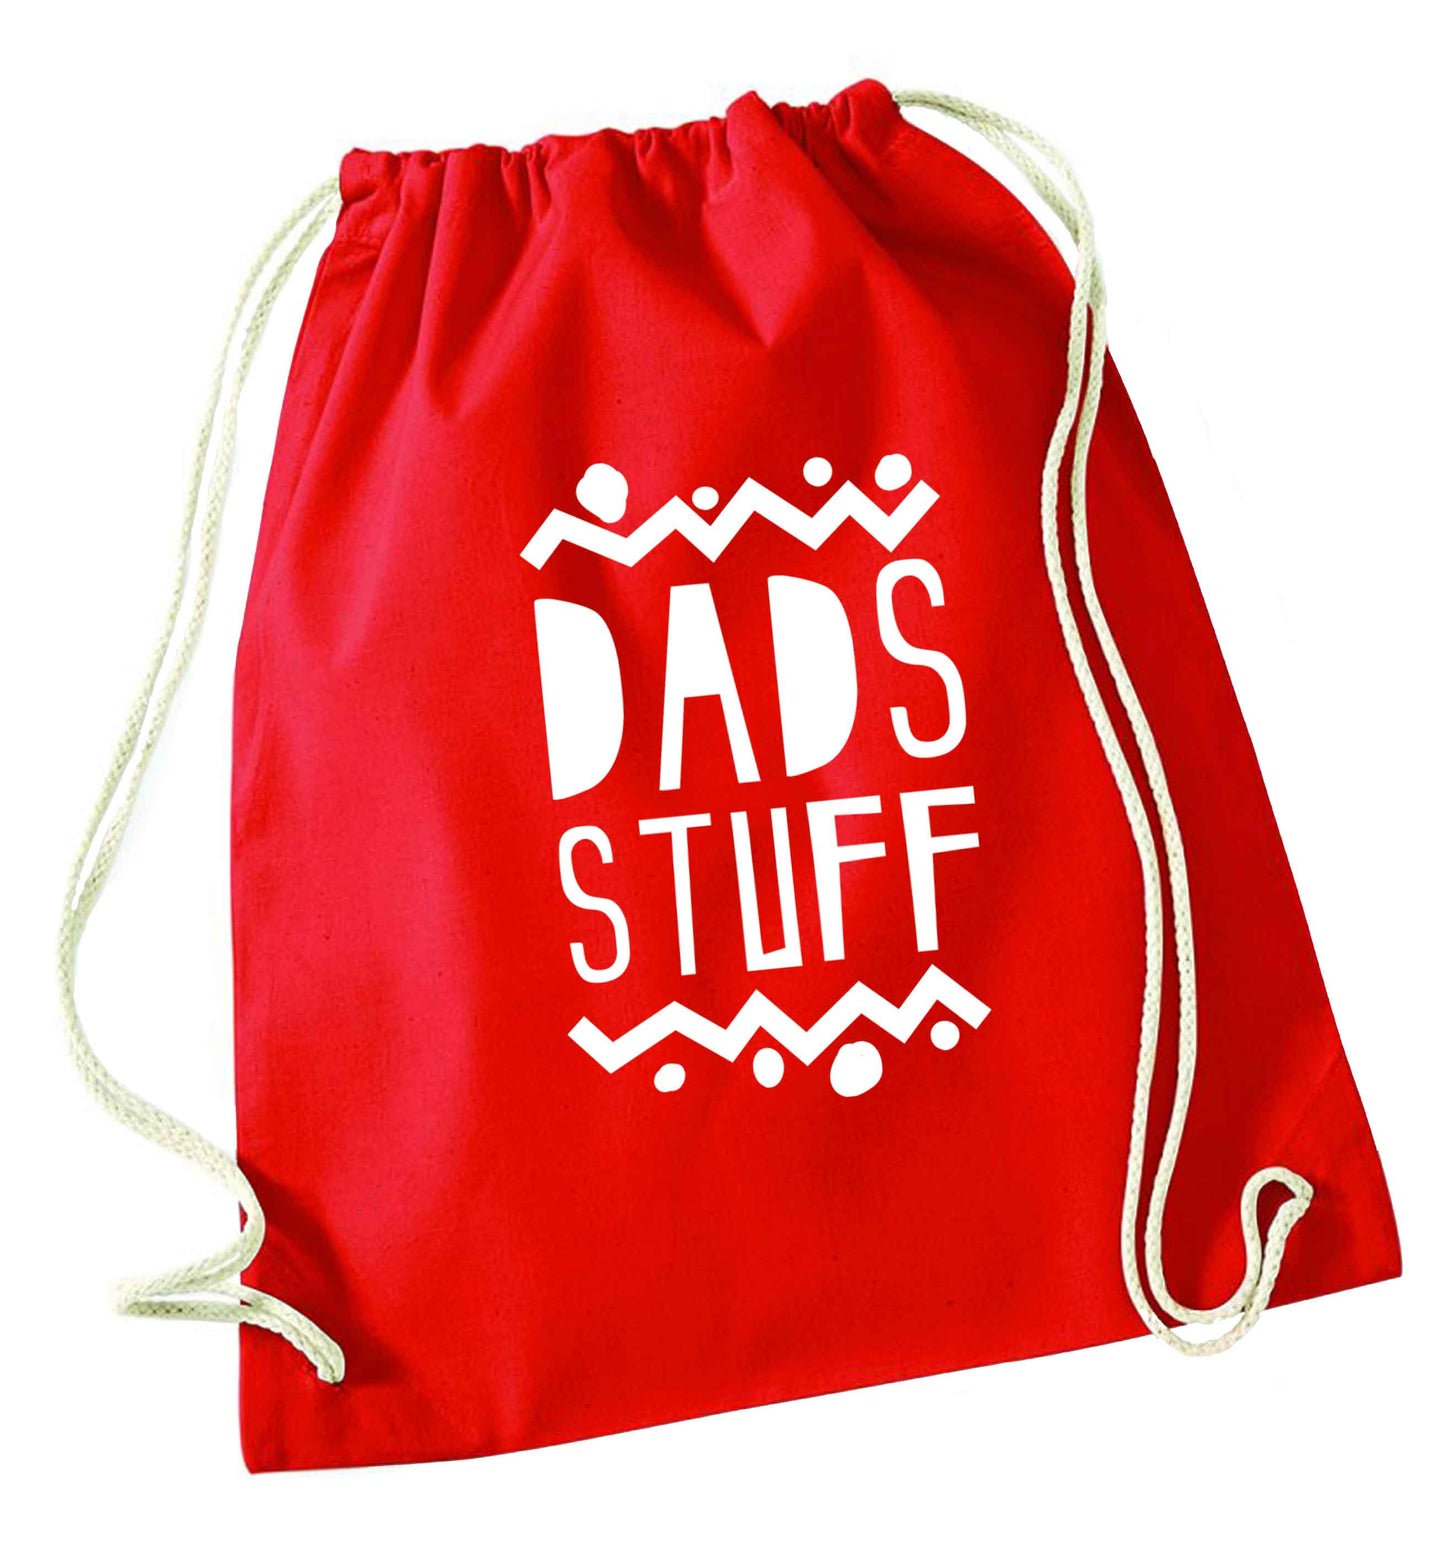 Dads stuff red drawstring bag 